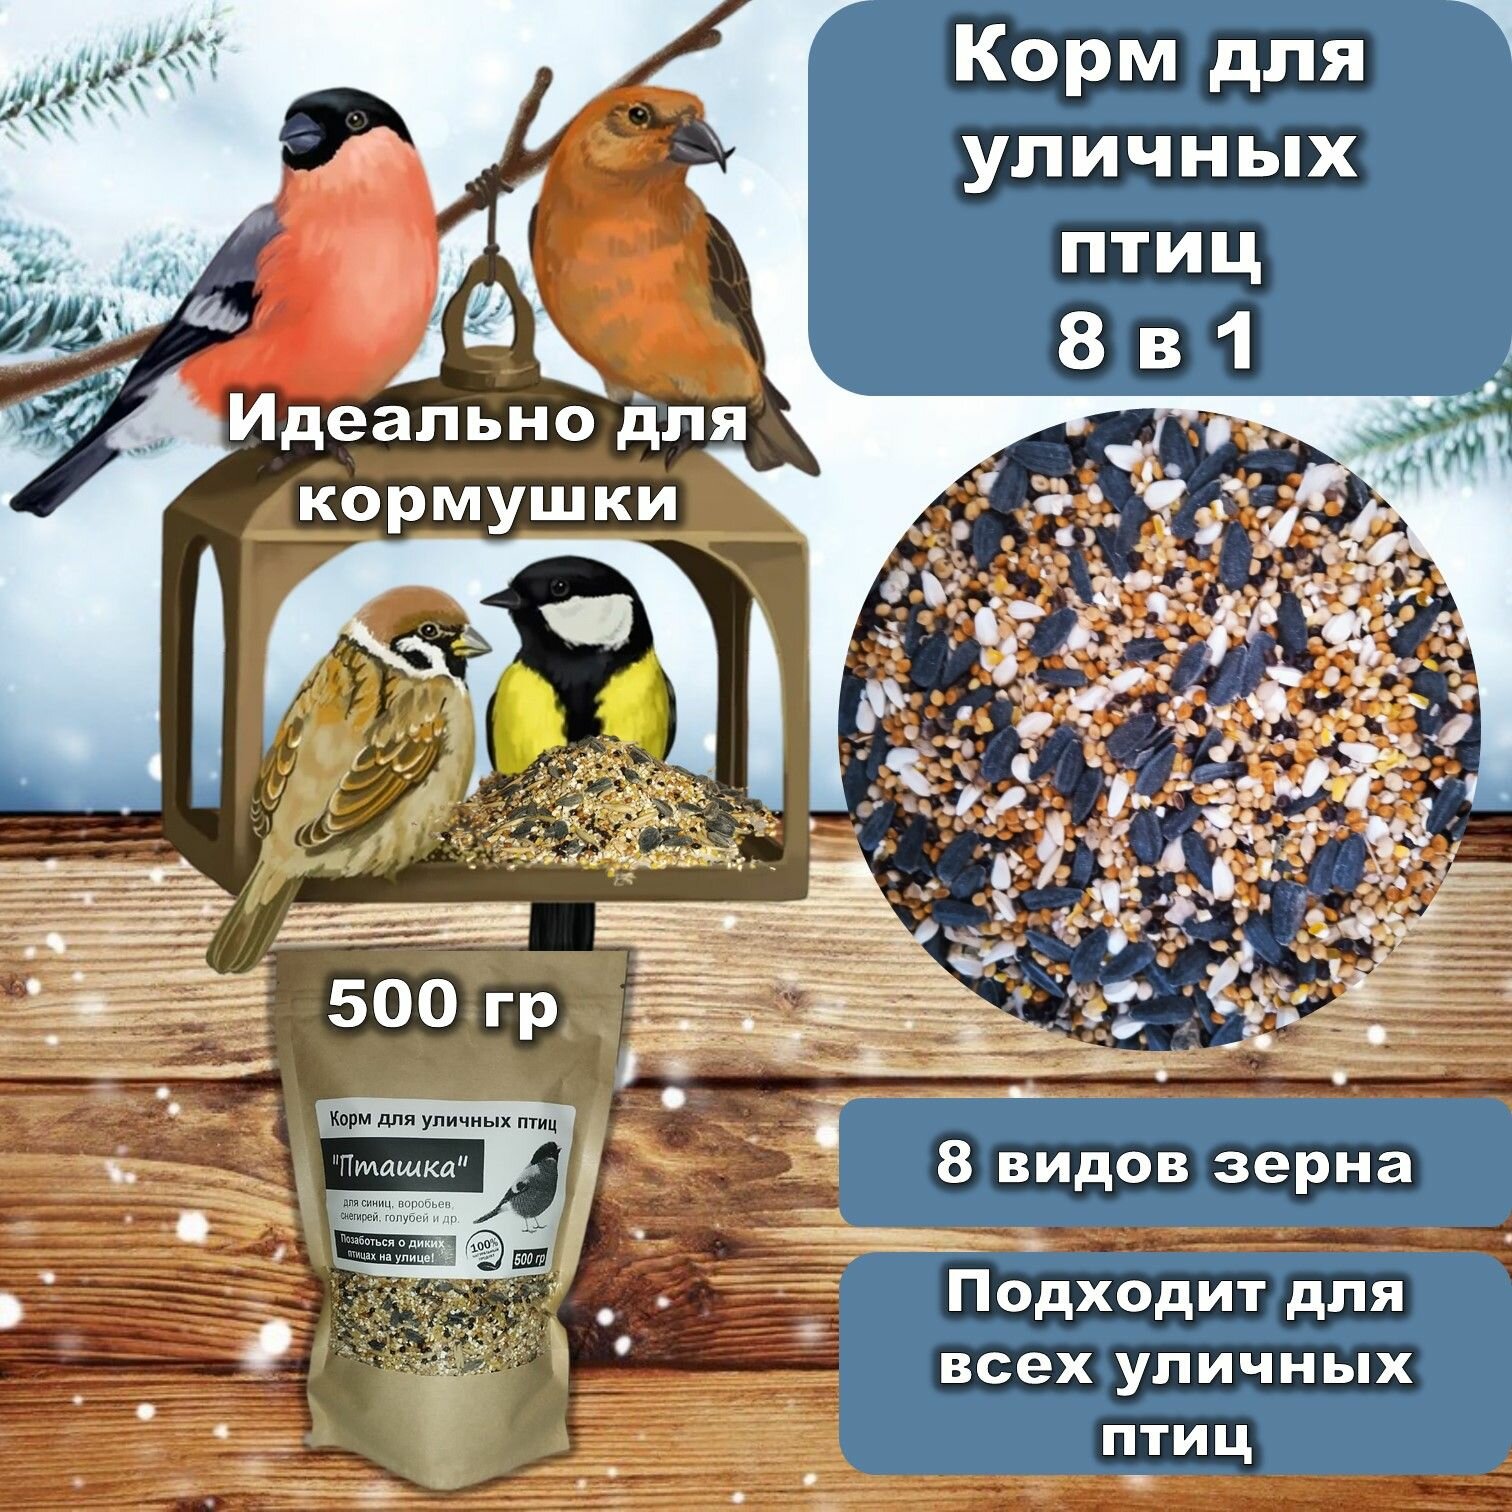 Корм для птиц 8 в 1 "Пташка" зерновой для всех уличных и лесных птиц 500 гр